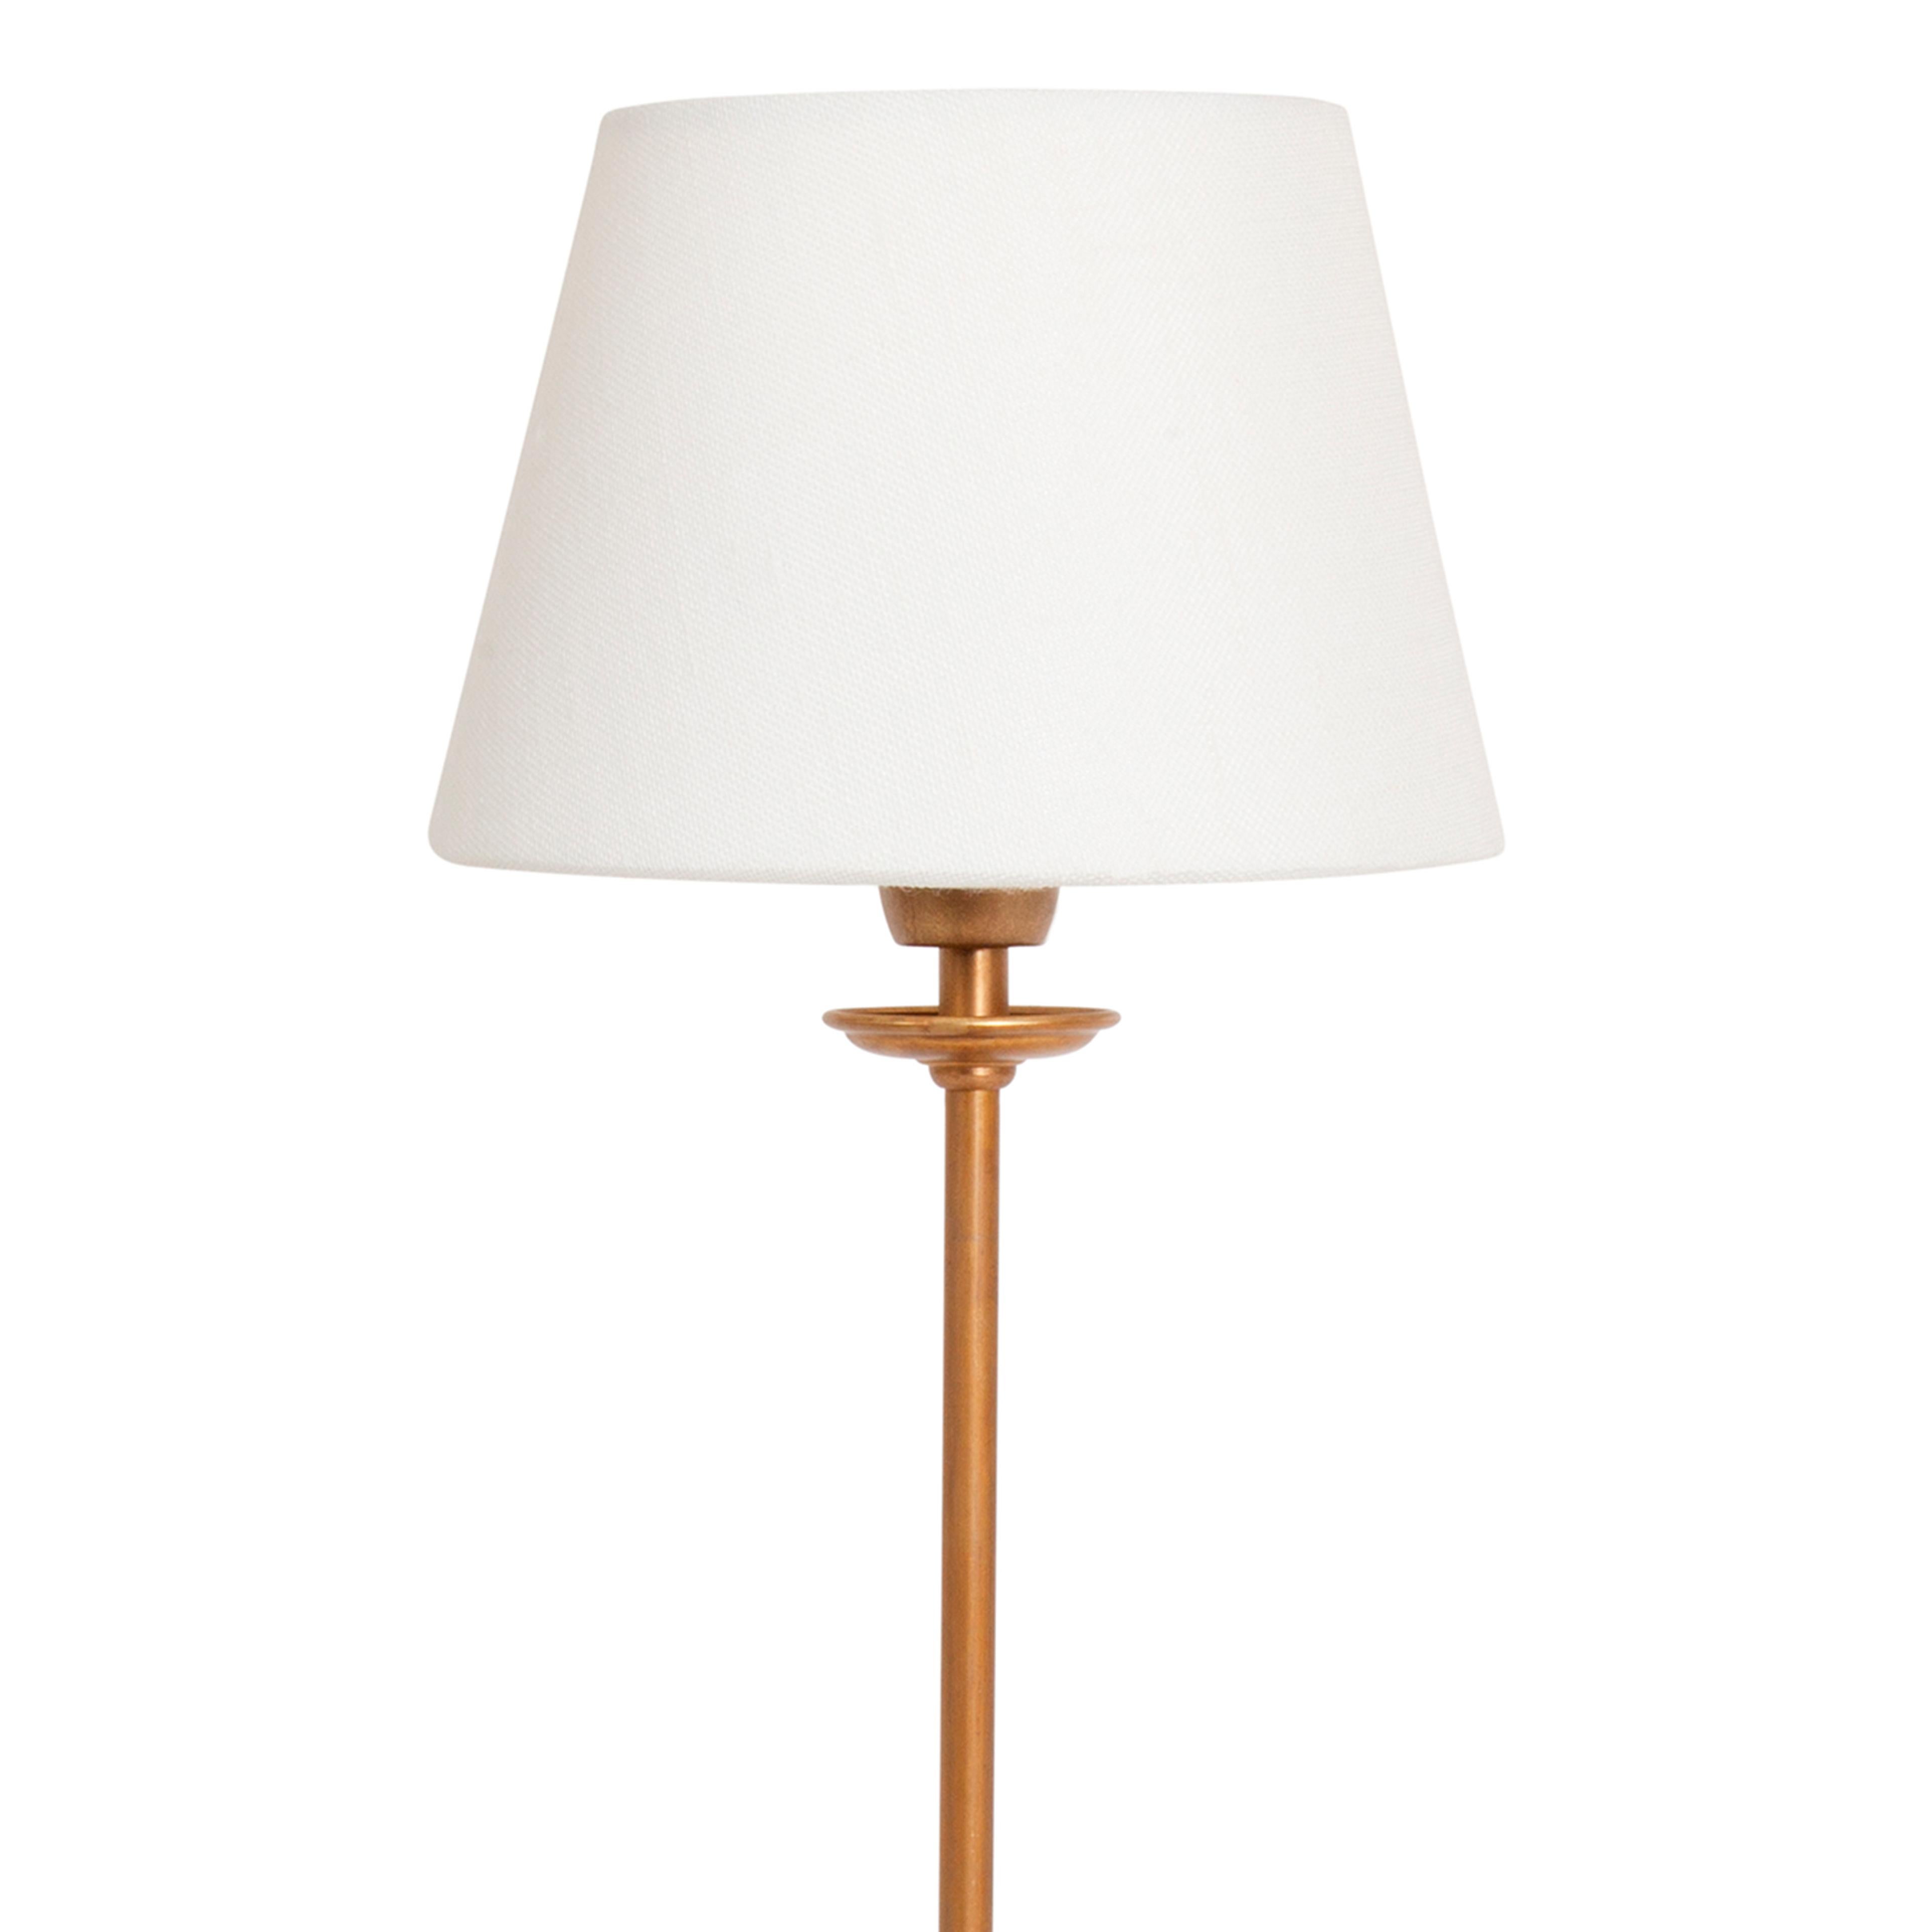 Konsthantverk Uno petite lampe de table en laiton.

On l'appelle généralement la lampe des possibilités. Vous créez votre propre combinaison de rêve à l'aide d'un pied de lampe et d'un écran. La base de la lampe est disponible en deux hauteurs.